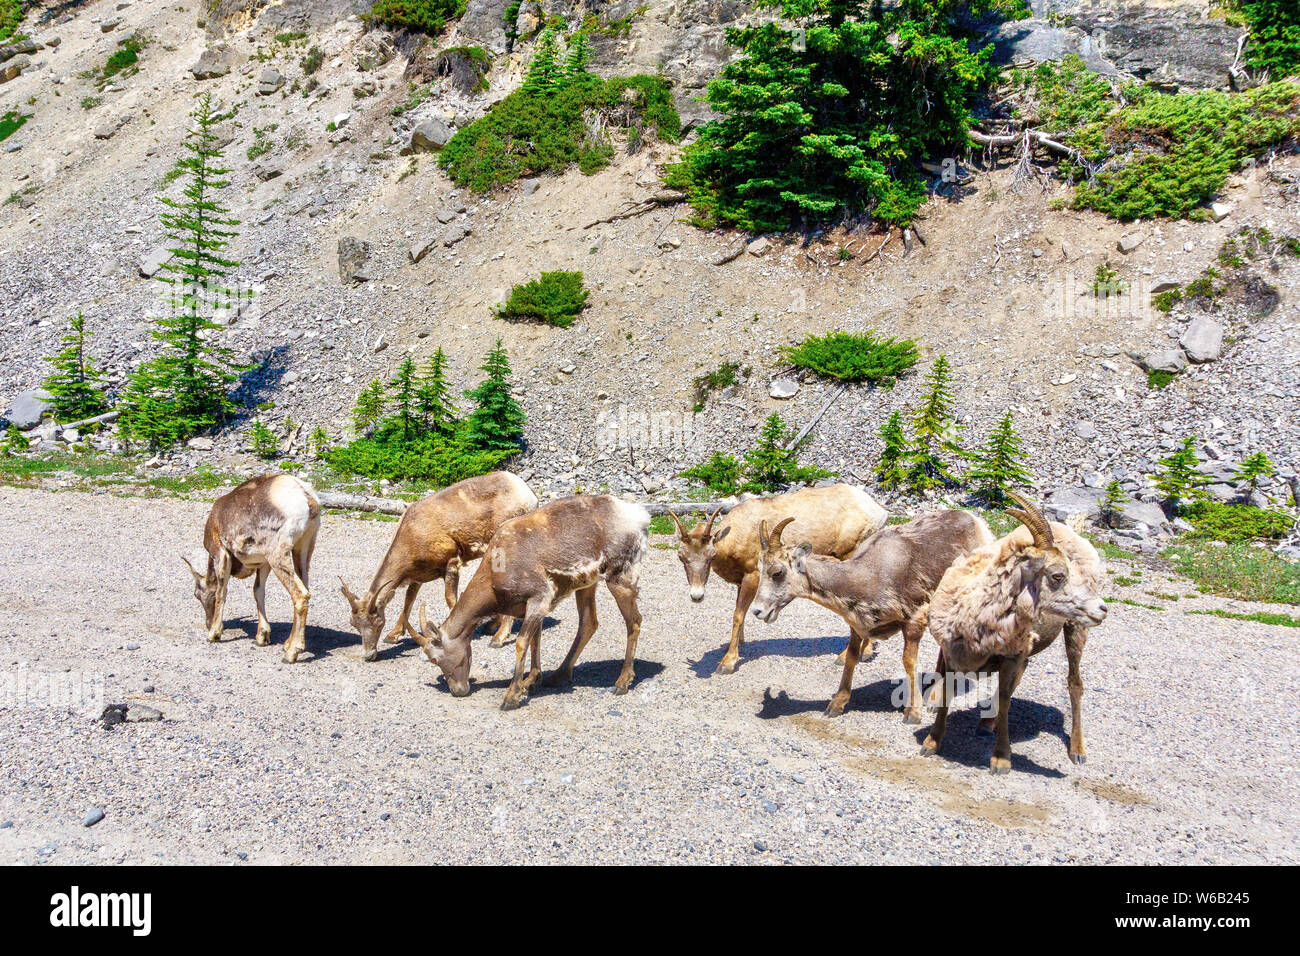 Mouflons le pâturage par le côté de la route, dans le parc national Banff, Alberta, Canada. Banque D'Images